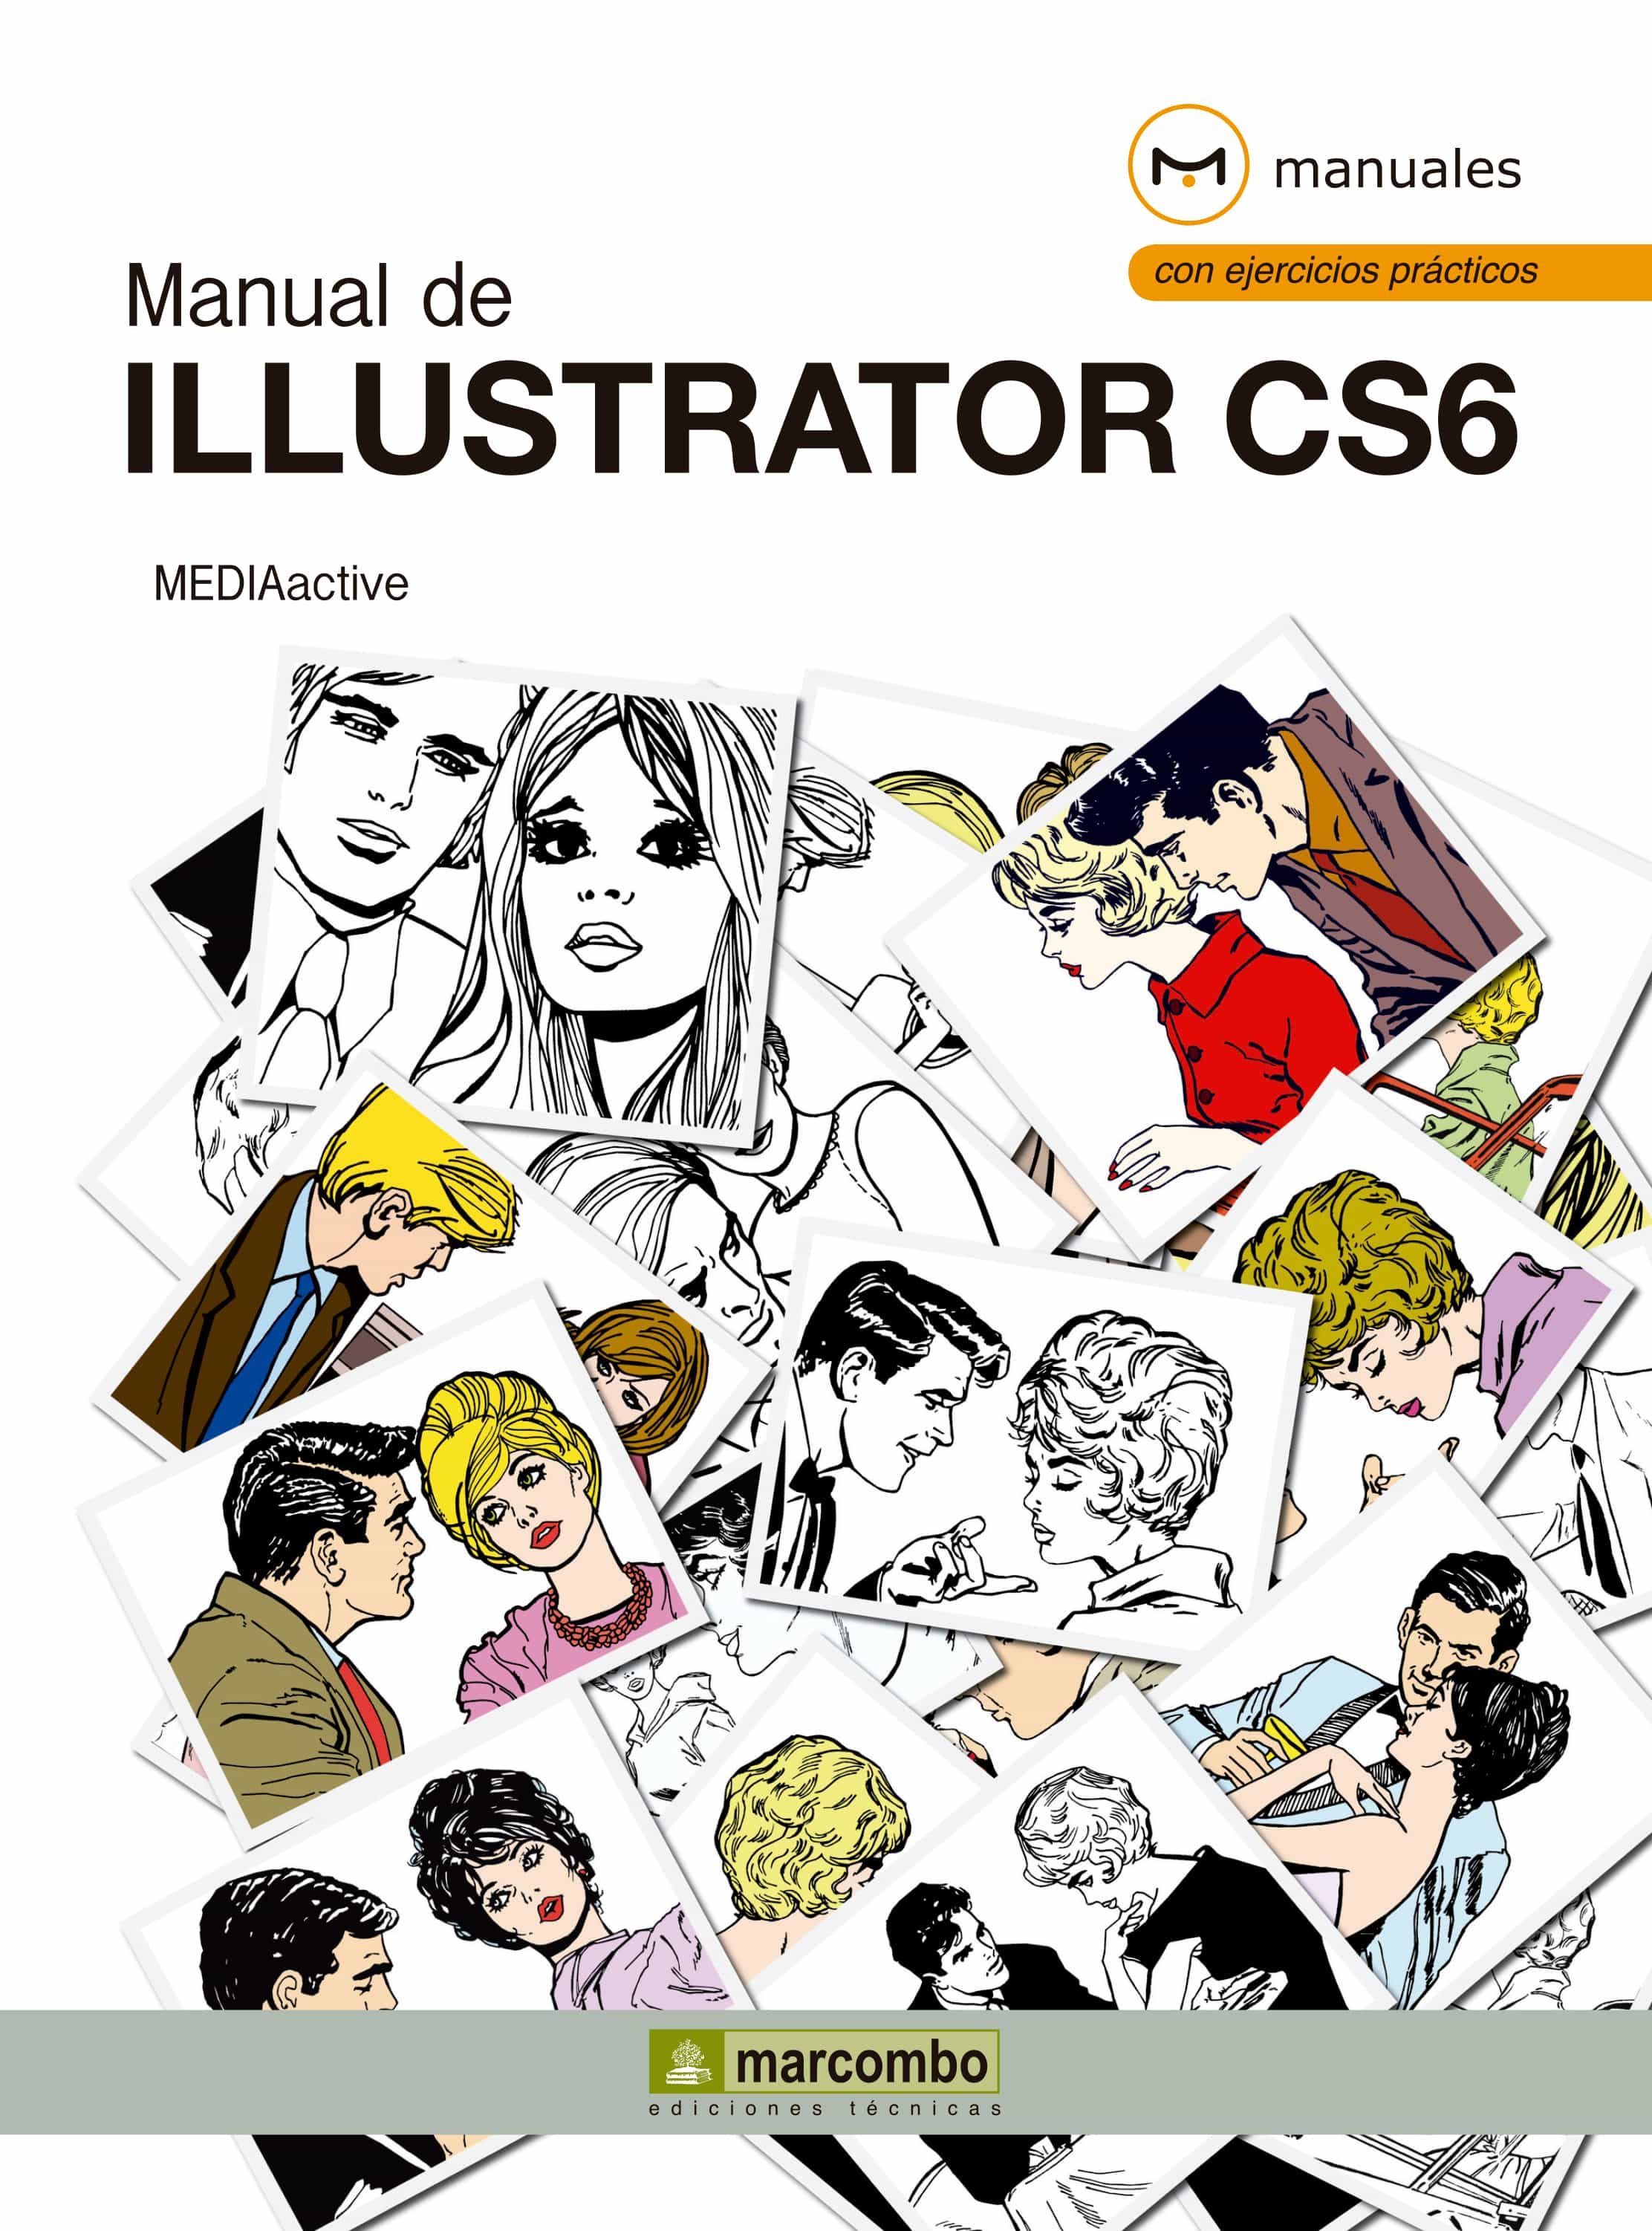 adobe illustrator cs6 user manual pdf free download